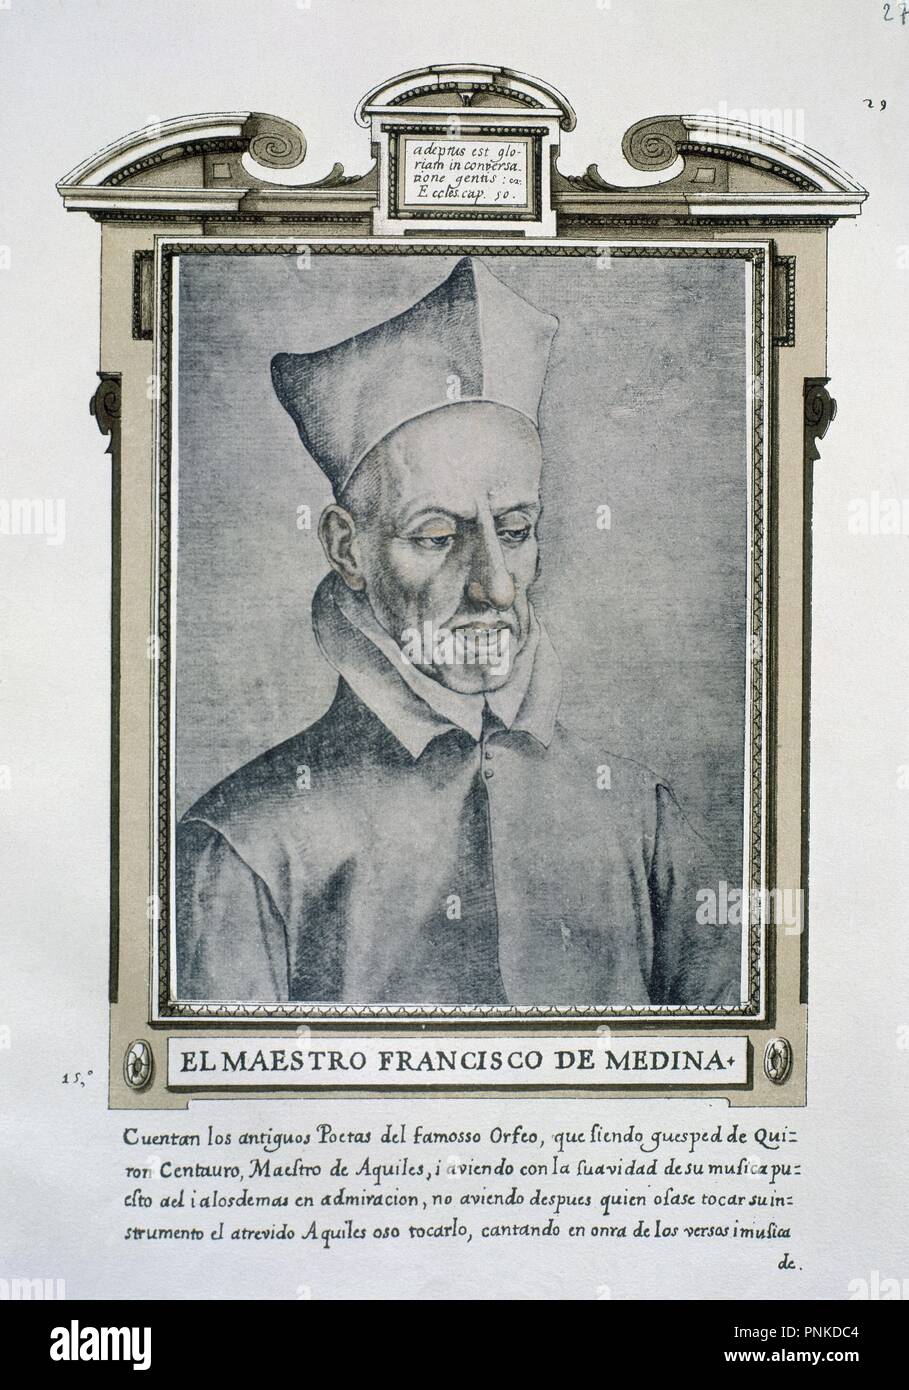 FRANCISCO DE MEDINA (1544-1615) - LIBRO DE RETRATOS DE ILUSTRES Y MEMORABLES VARONES - 1599. Author: PACHECO, FRANCISCO. Location: BIBLIOTECA NACIONAL-COLECCION. MADRID. SPAIN. Stock Photo